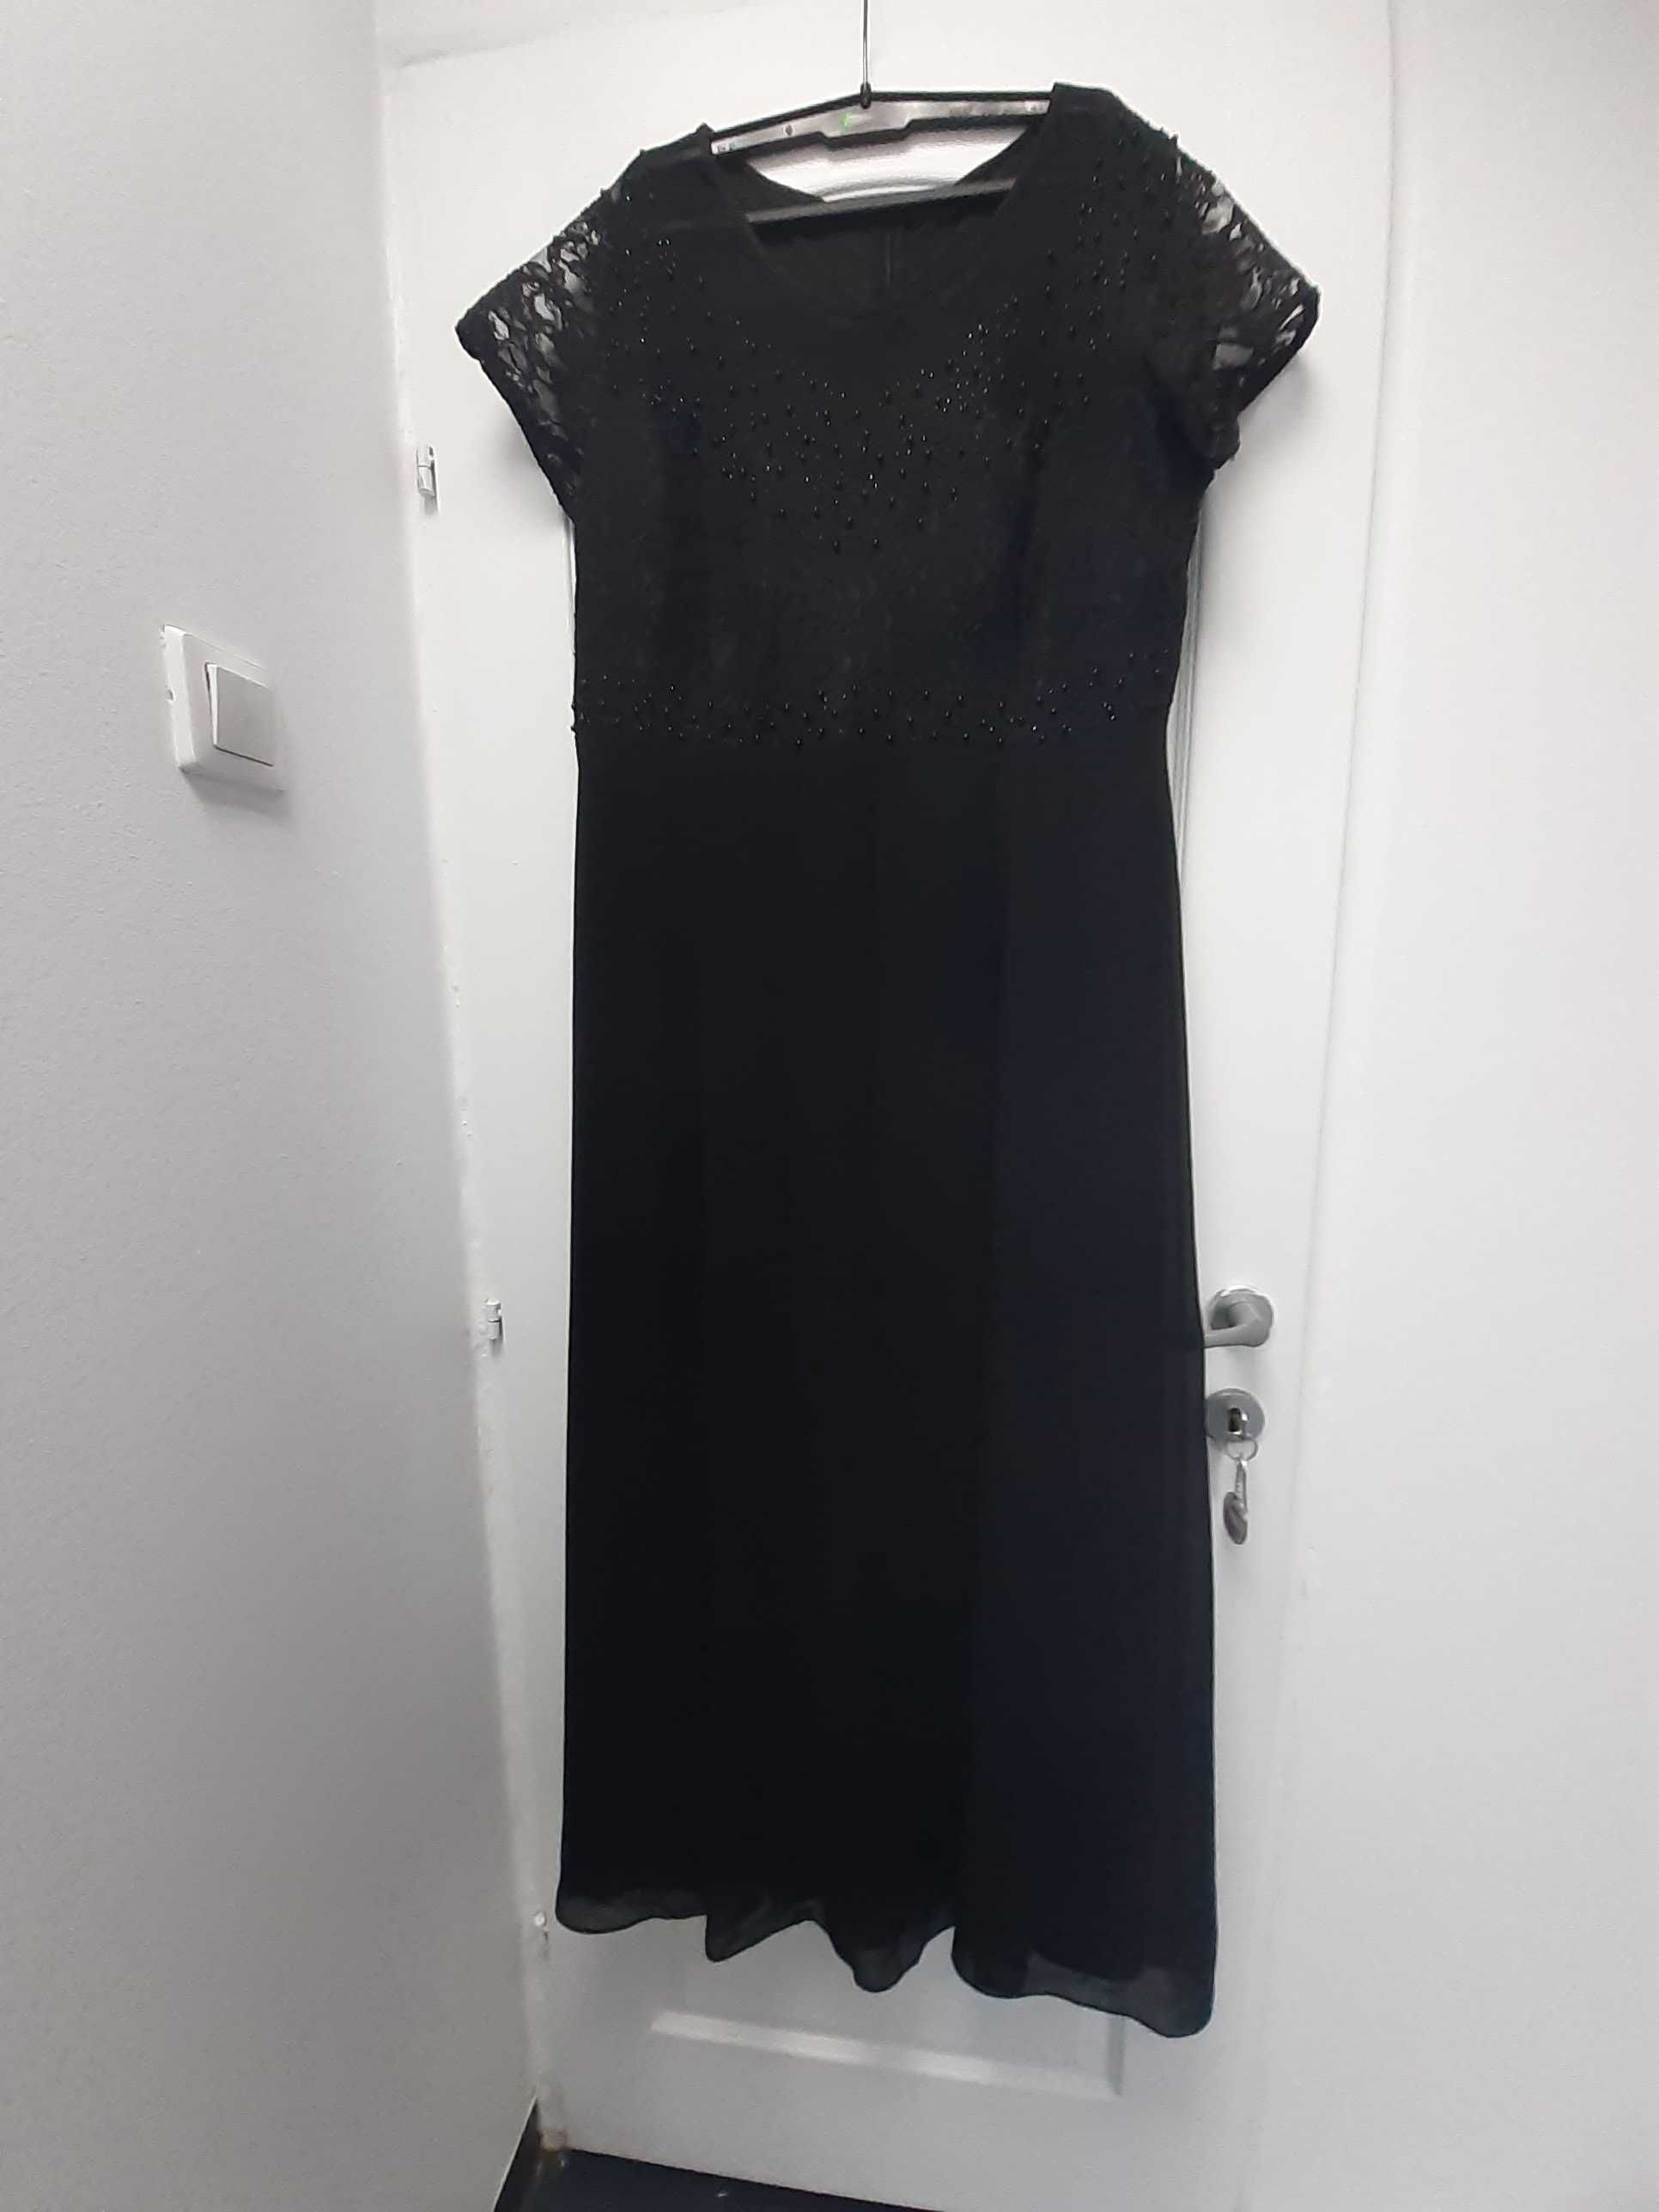 Vand rochie marimea 52,lunga culoare negru cu aplicatii pe piept